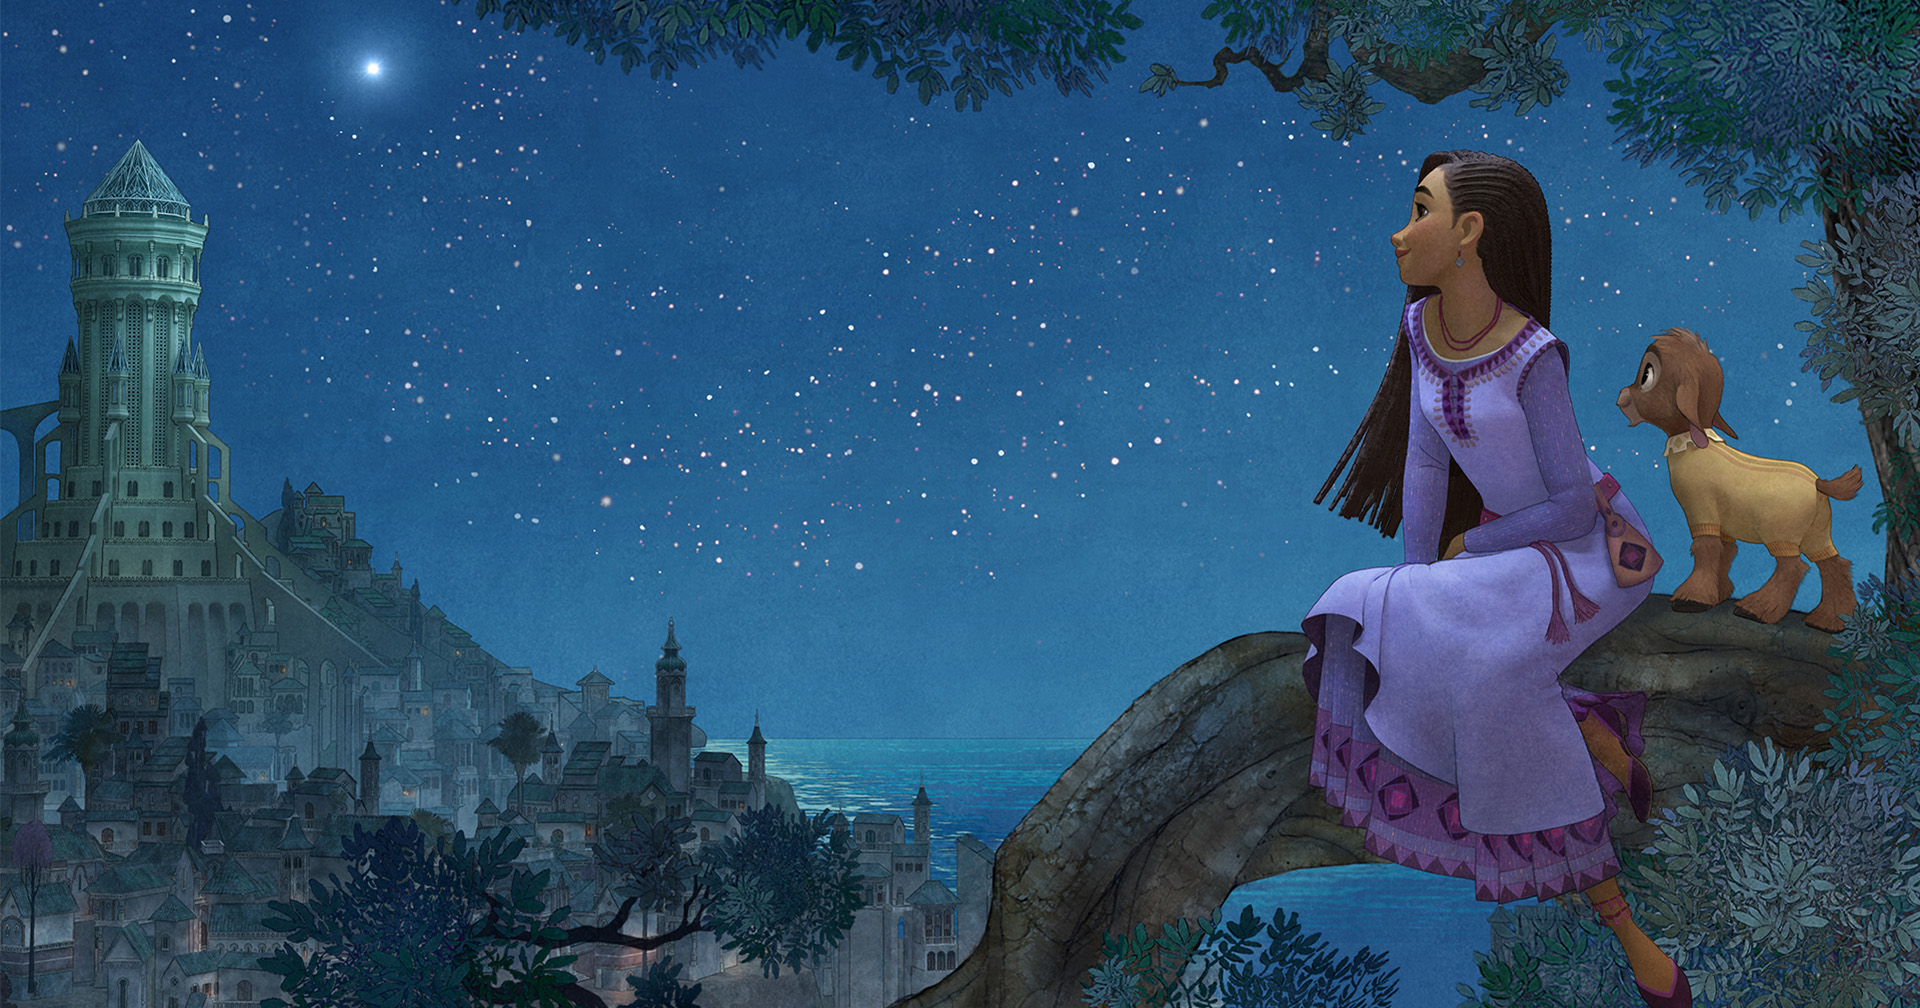 เผยภาพแรก ‘Wish’ แอนิเมชันเรื่องใหม่ของ Disney ฝน วีระสุนทร ทีมงานไทยร่วมกำกับ